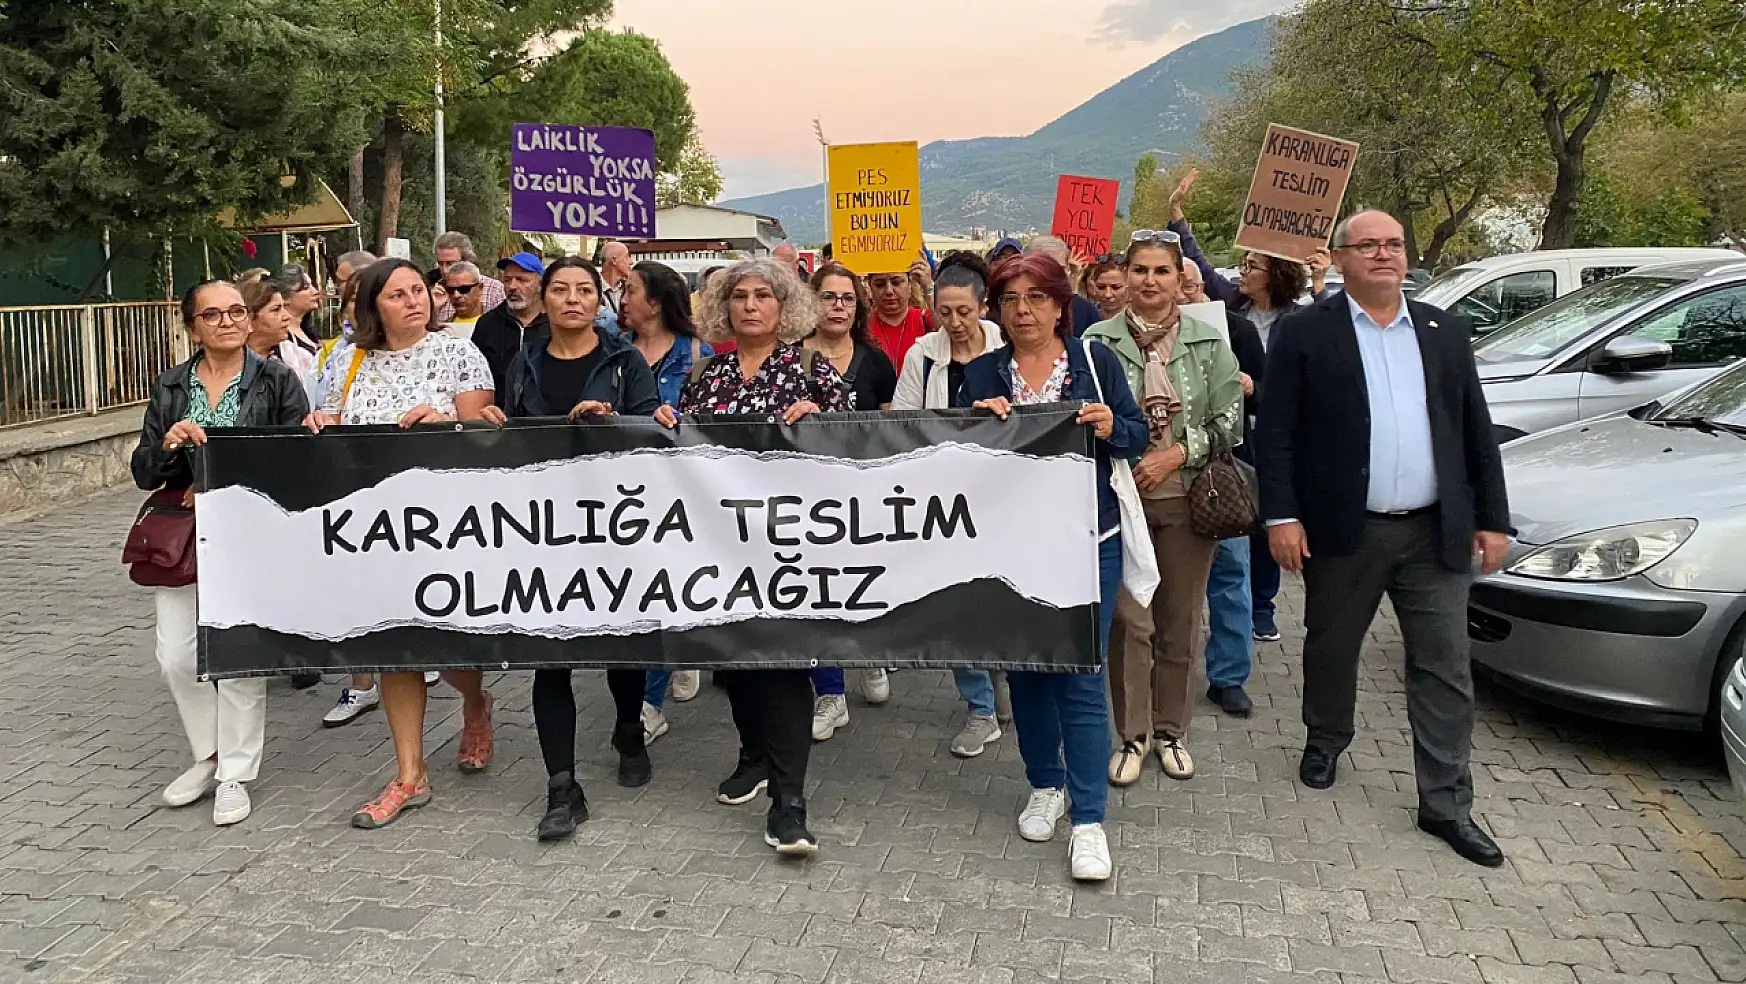 Fethiye'de 'Karanlığa Teslim Olmayacağız' pankartıyla yürüdüler